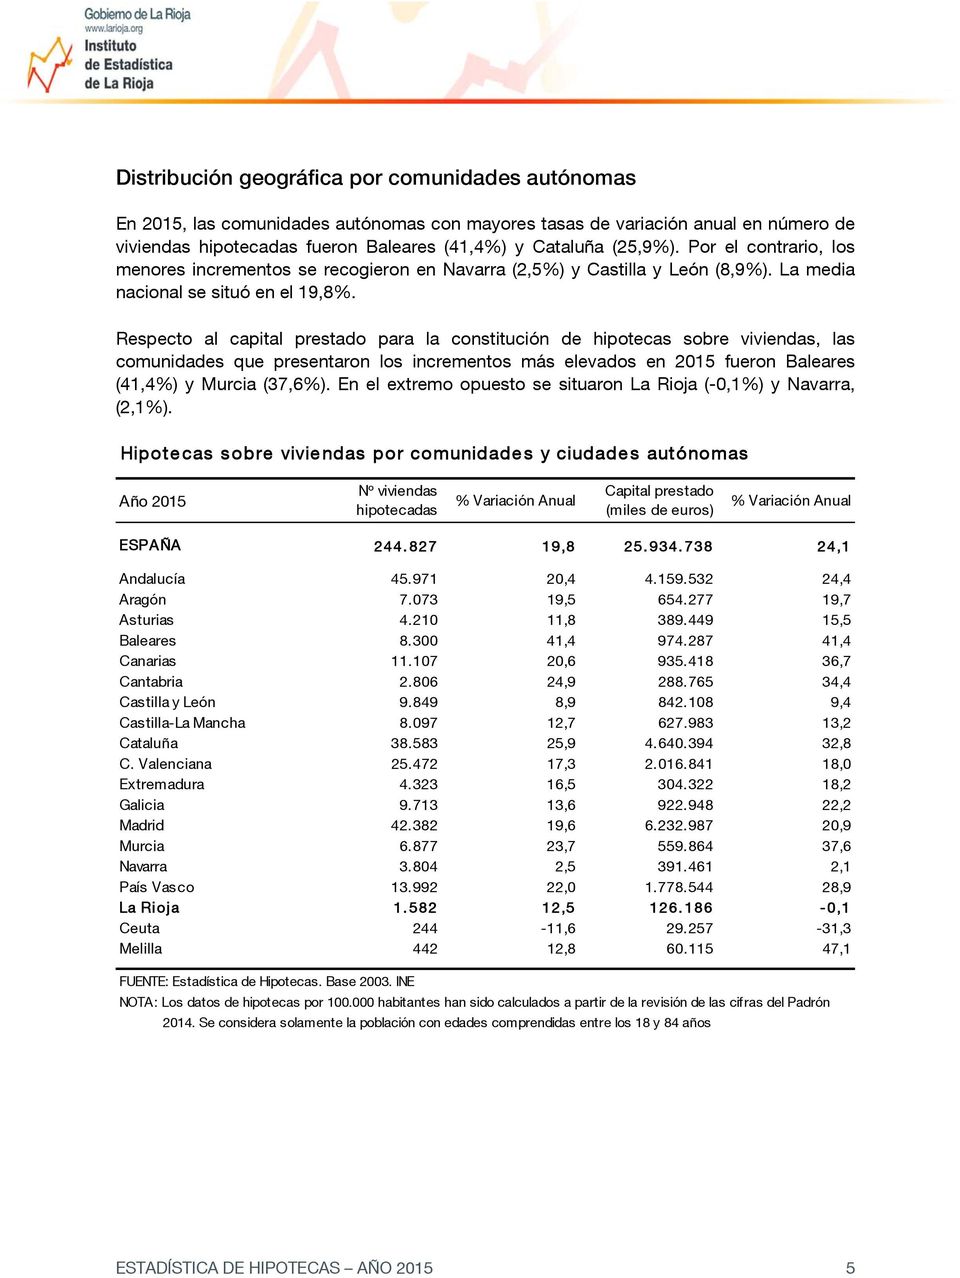 Respecto al capital prestado para la constitución de hipotecas sobre viviendas, las comunidades que presentaron los incrementos más elevados en 2015 fueron Baleares (41,4%) y Murcia (37,6%).